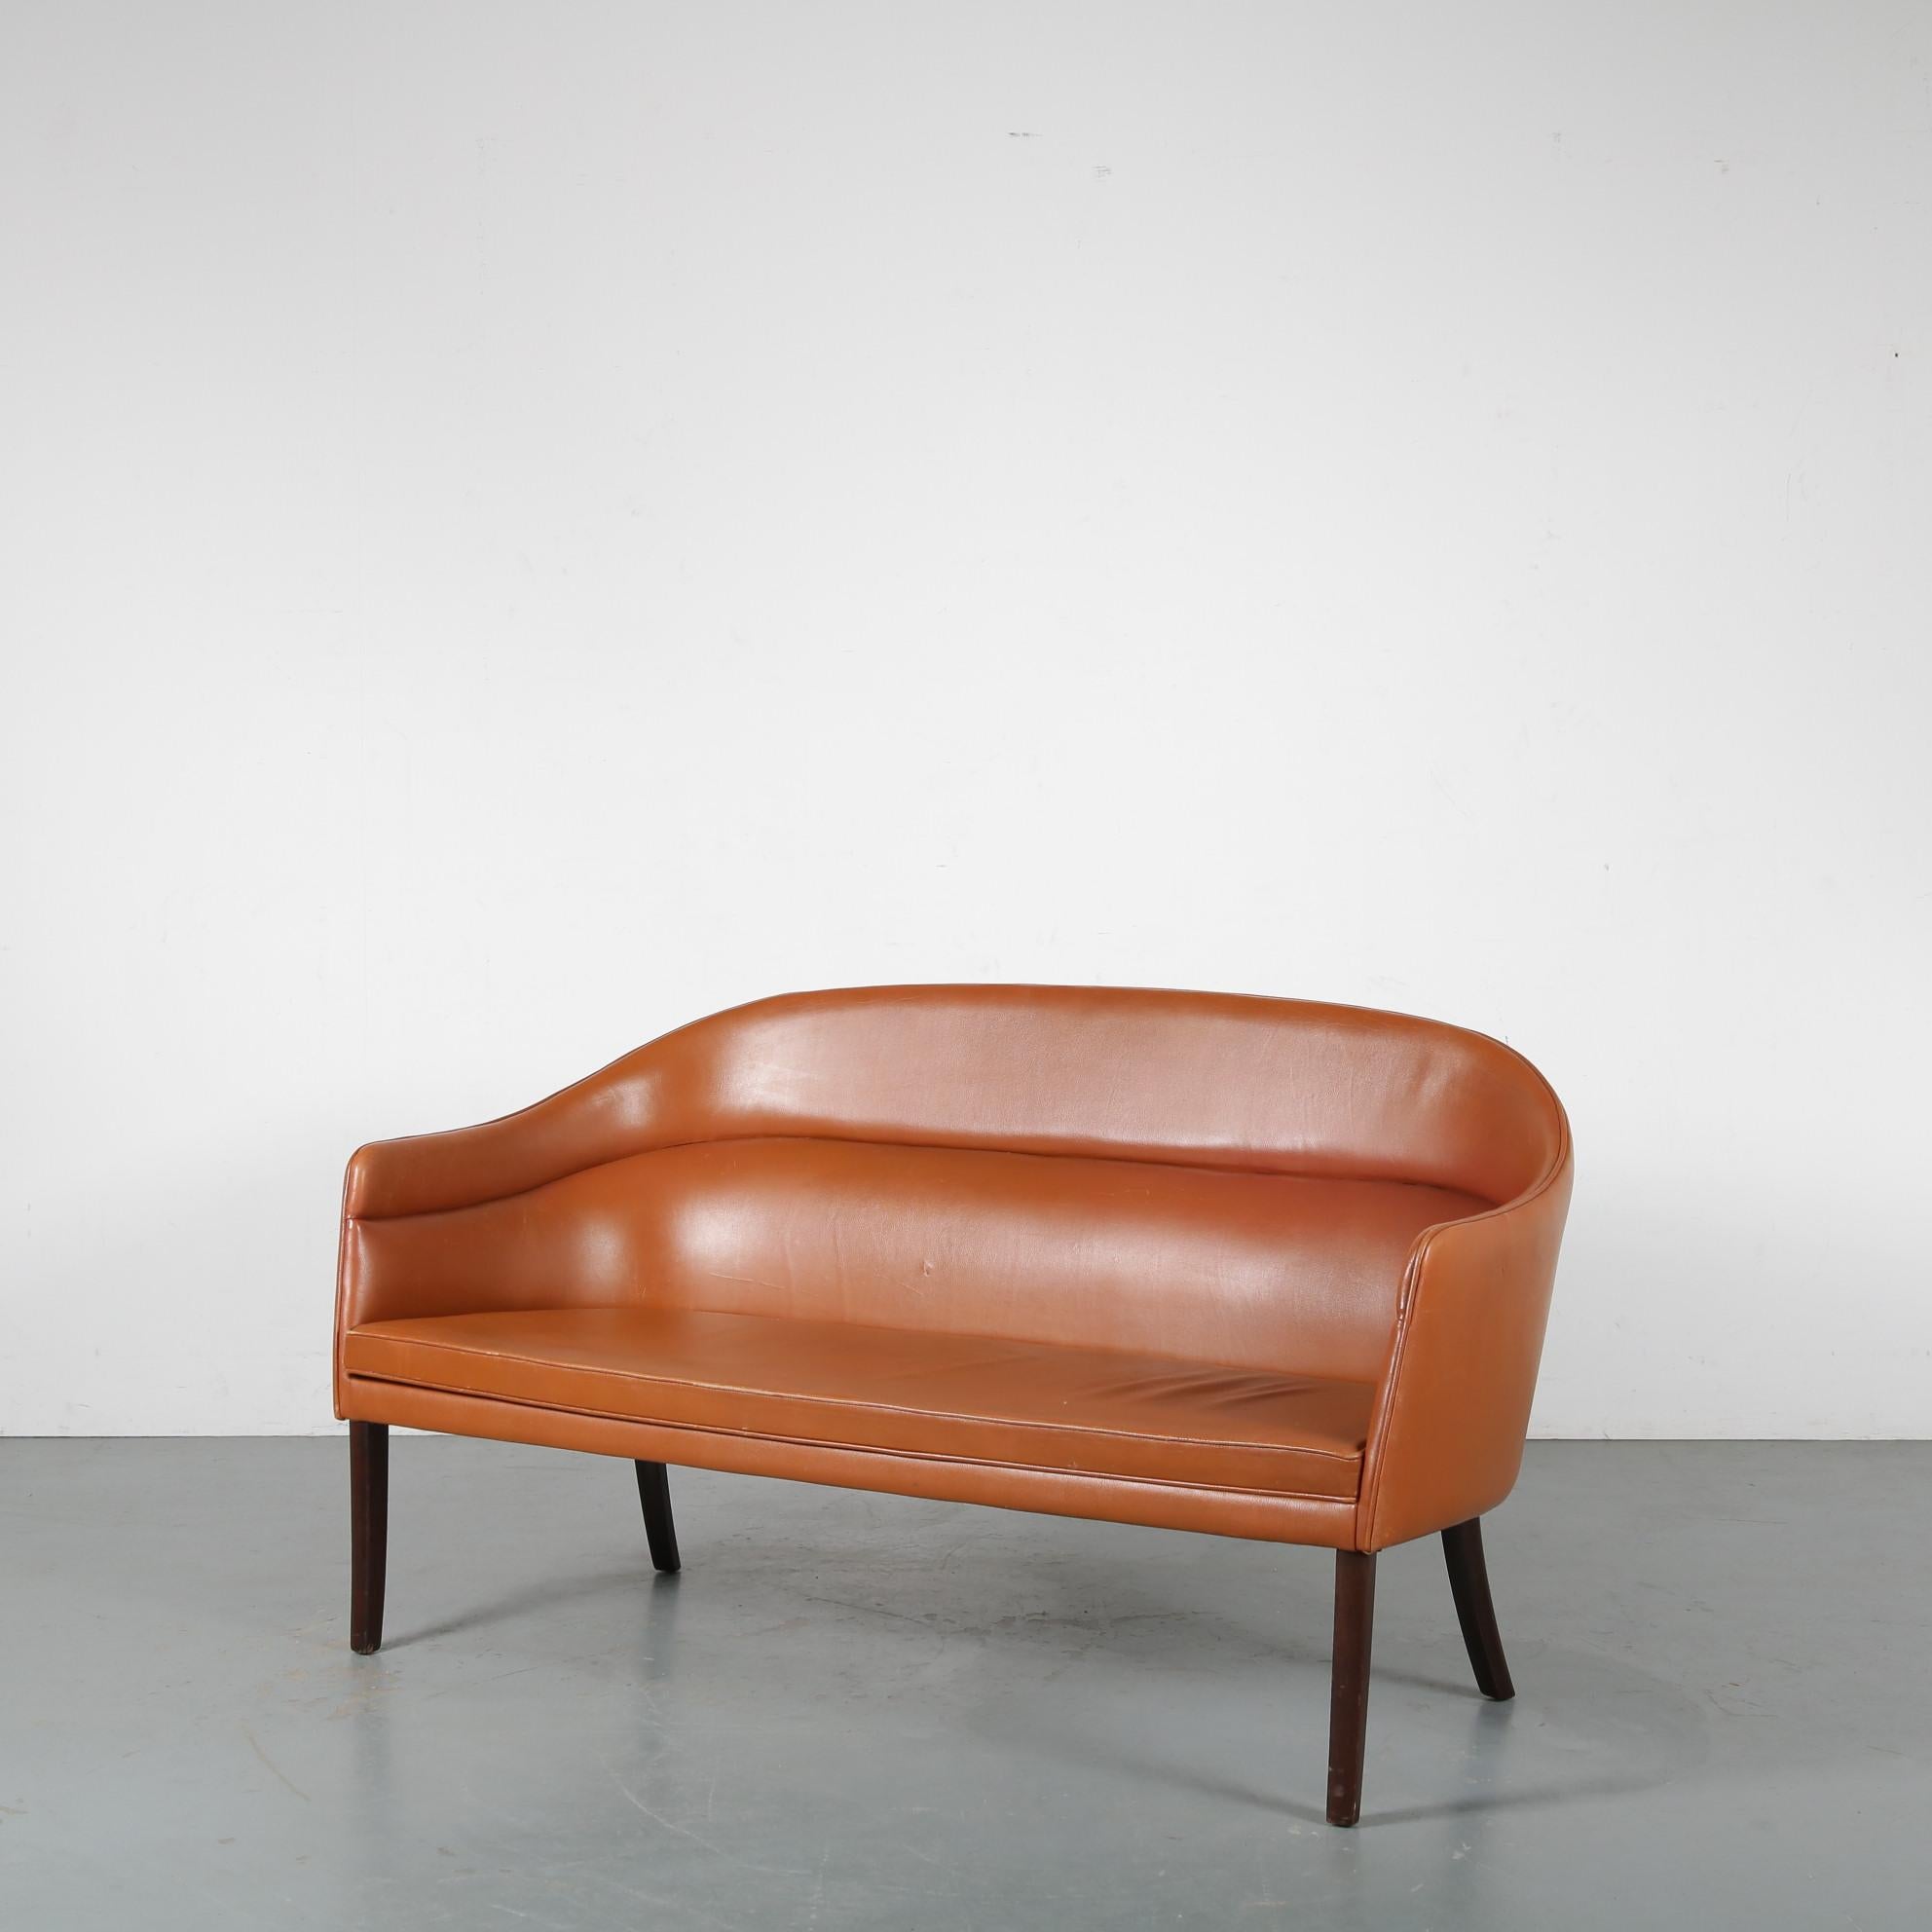 Ein hervorragendes, sehr seltenes 2-sitziges Sofa, entworfen von Ole Wanscher, hergestellt von J. Jeppesen in Dänemark um 1950.

Dieses beeindruckende Stück ist wirklich gut gemacht von einem der größten dänischen Designer. Er hat elegante, hohe